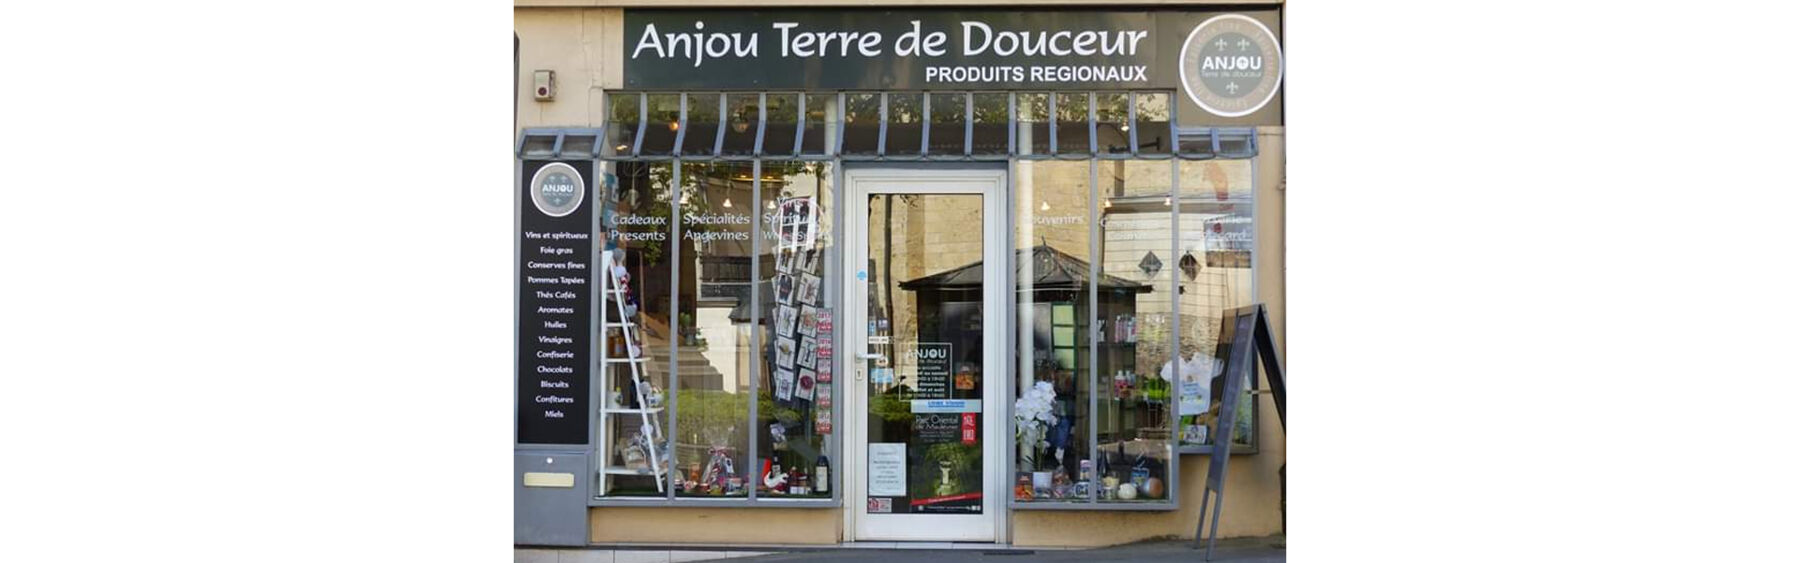 Anjou Terre de Douceur, votre épicerie angevine